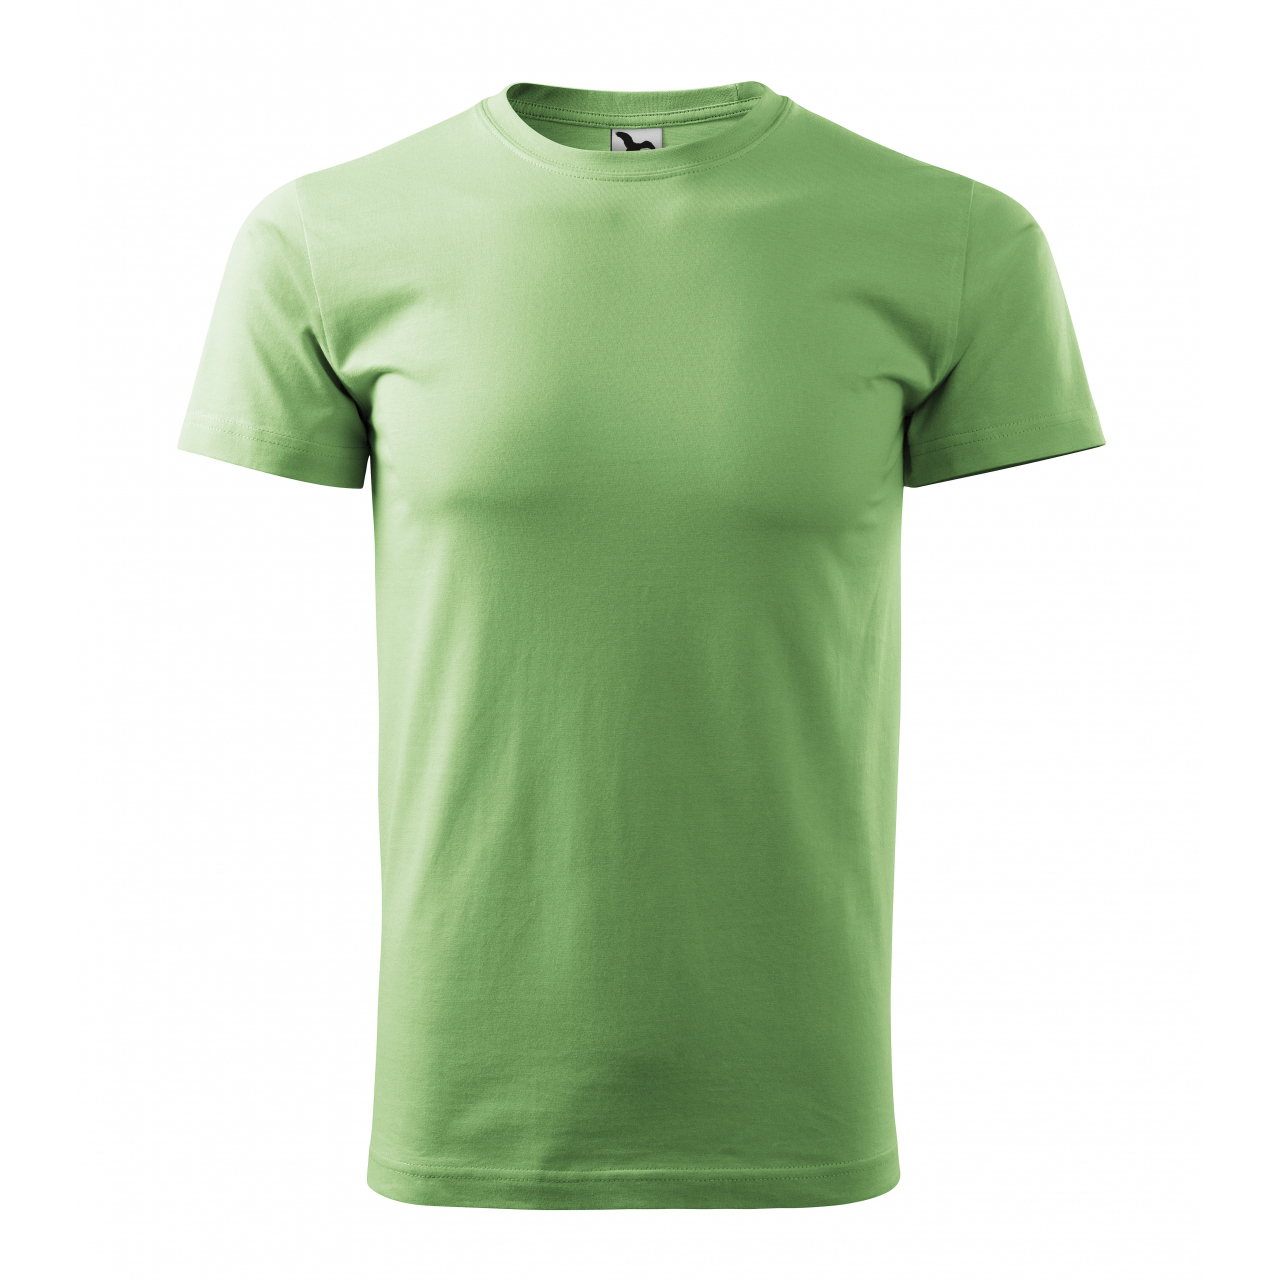 Tričko unisex Malfini Heavy New - světle zelené, XL